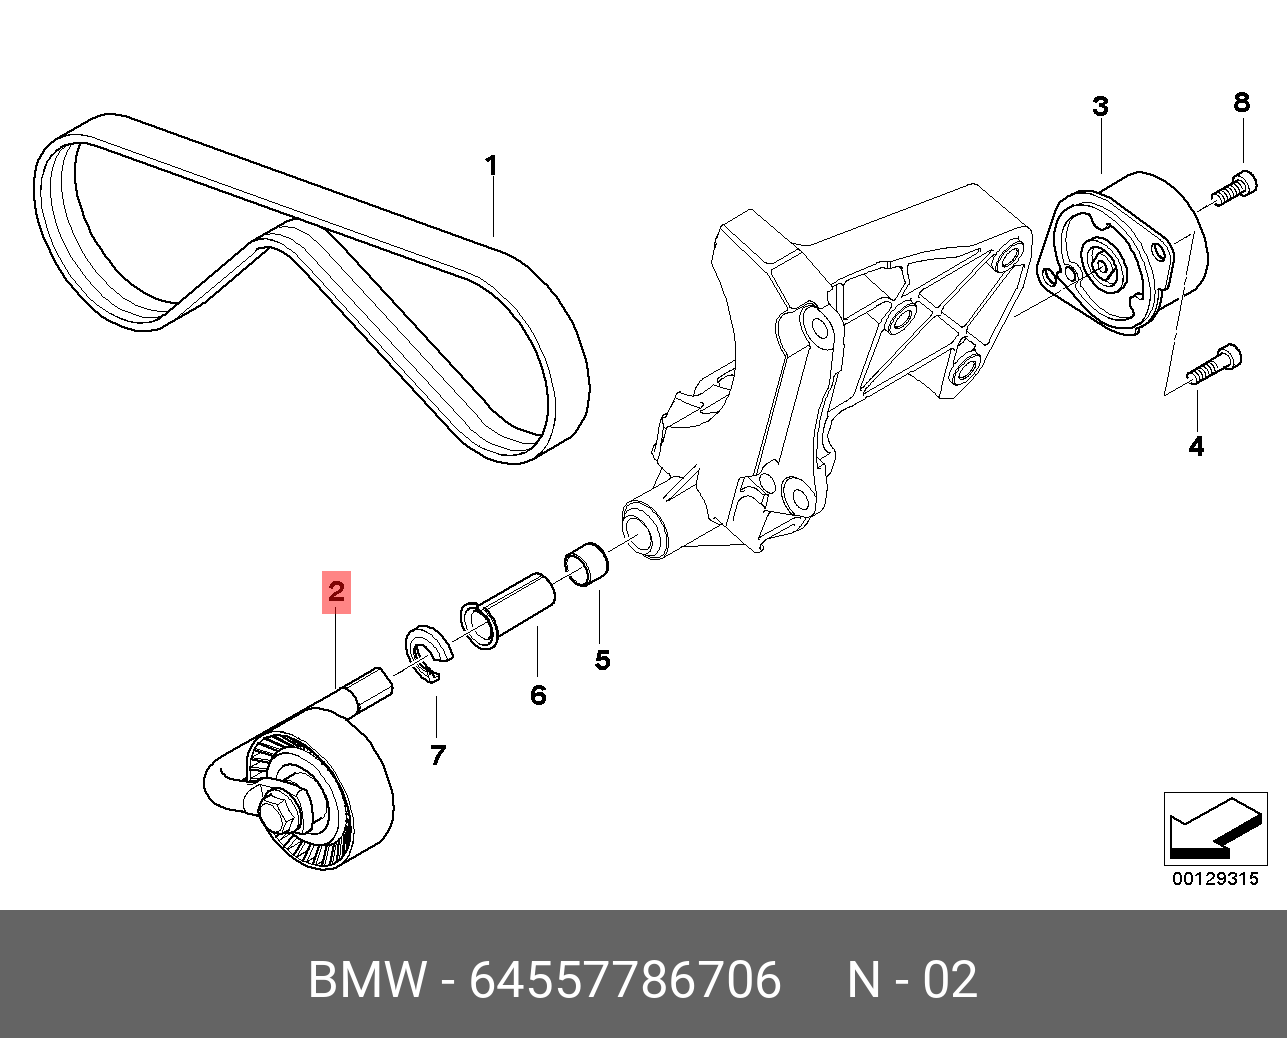 Ролик натяжной навесного оборудования - BMW 64 55 7 786 706